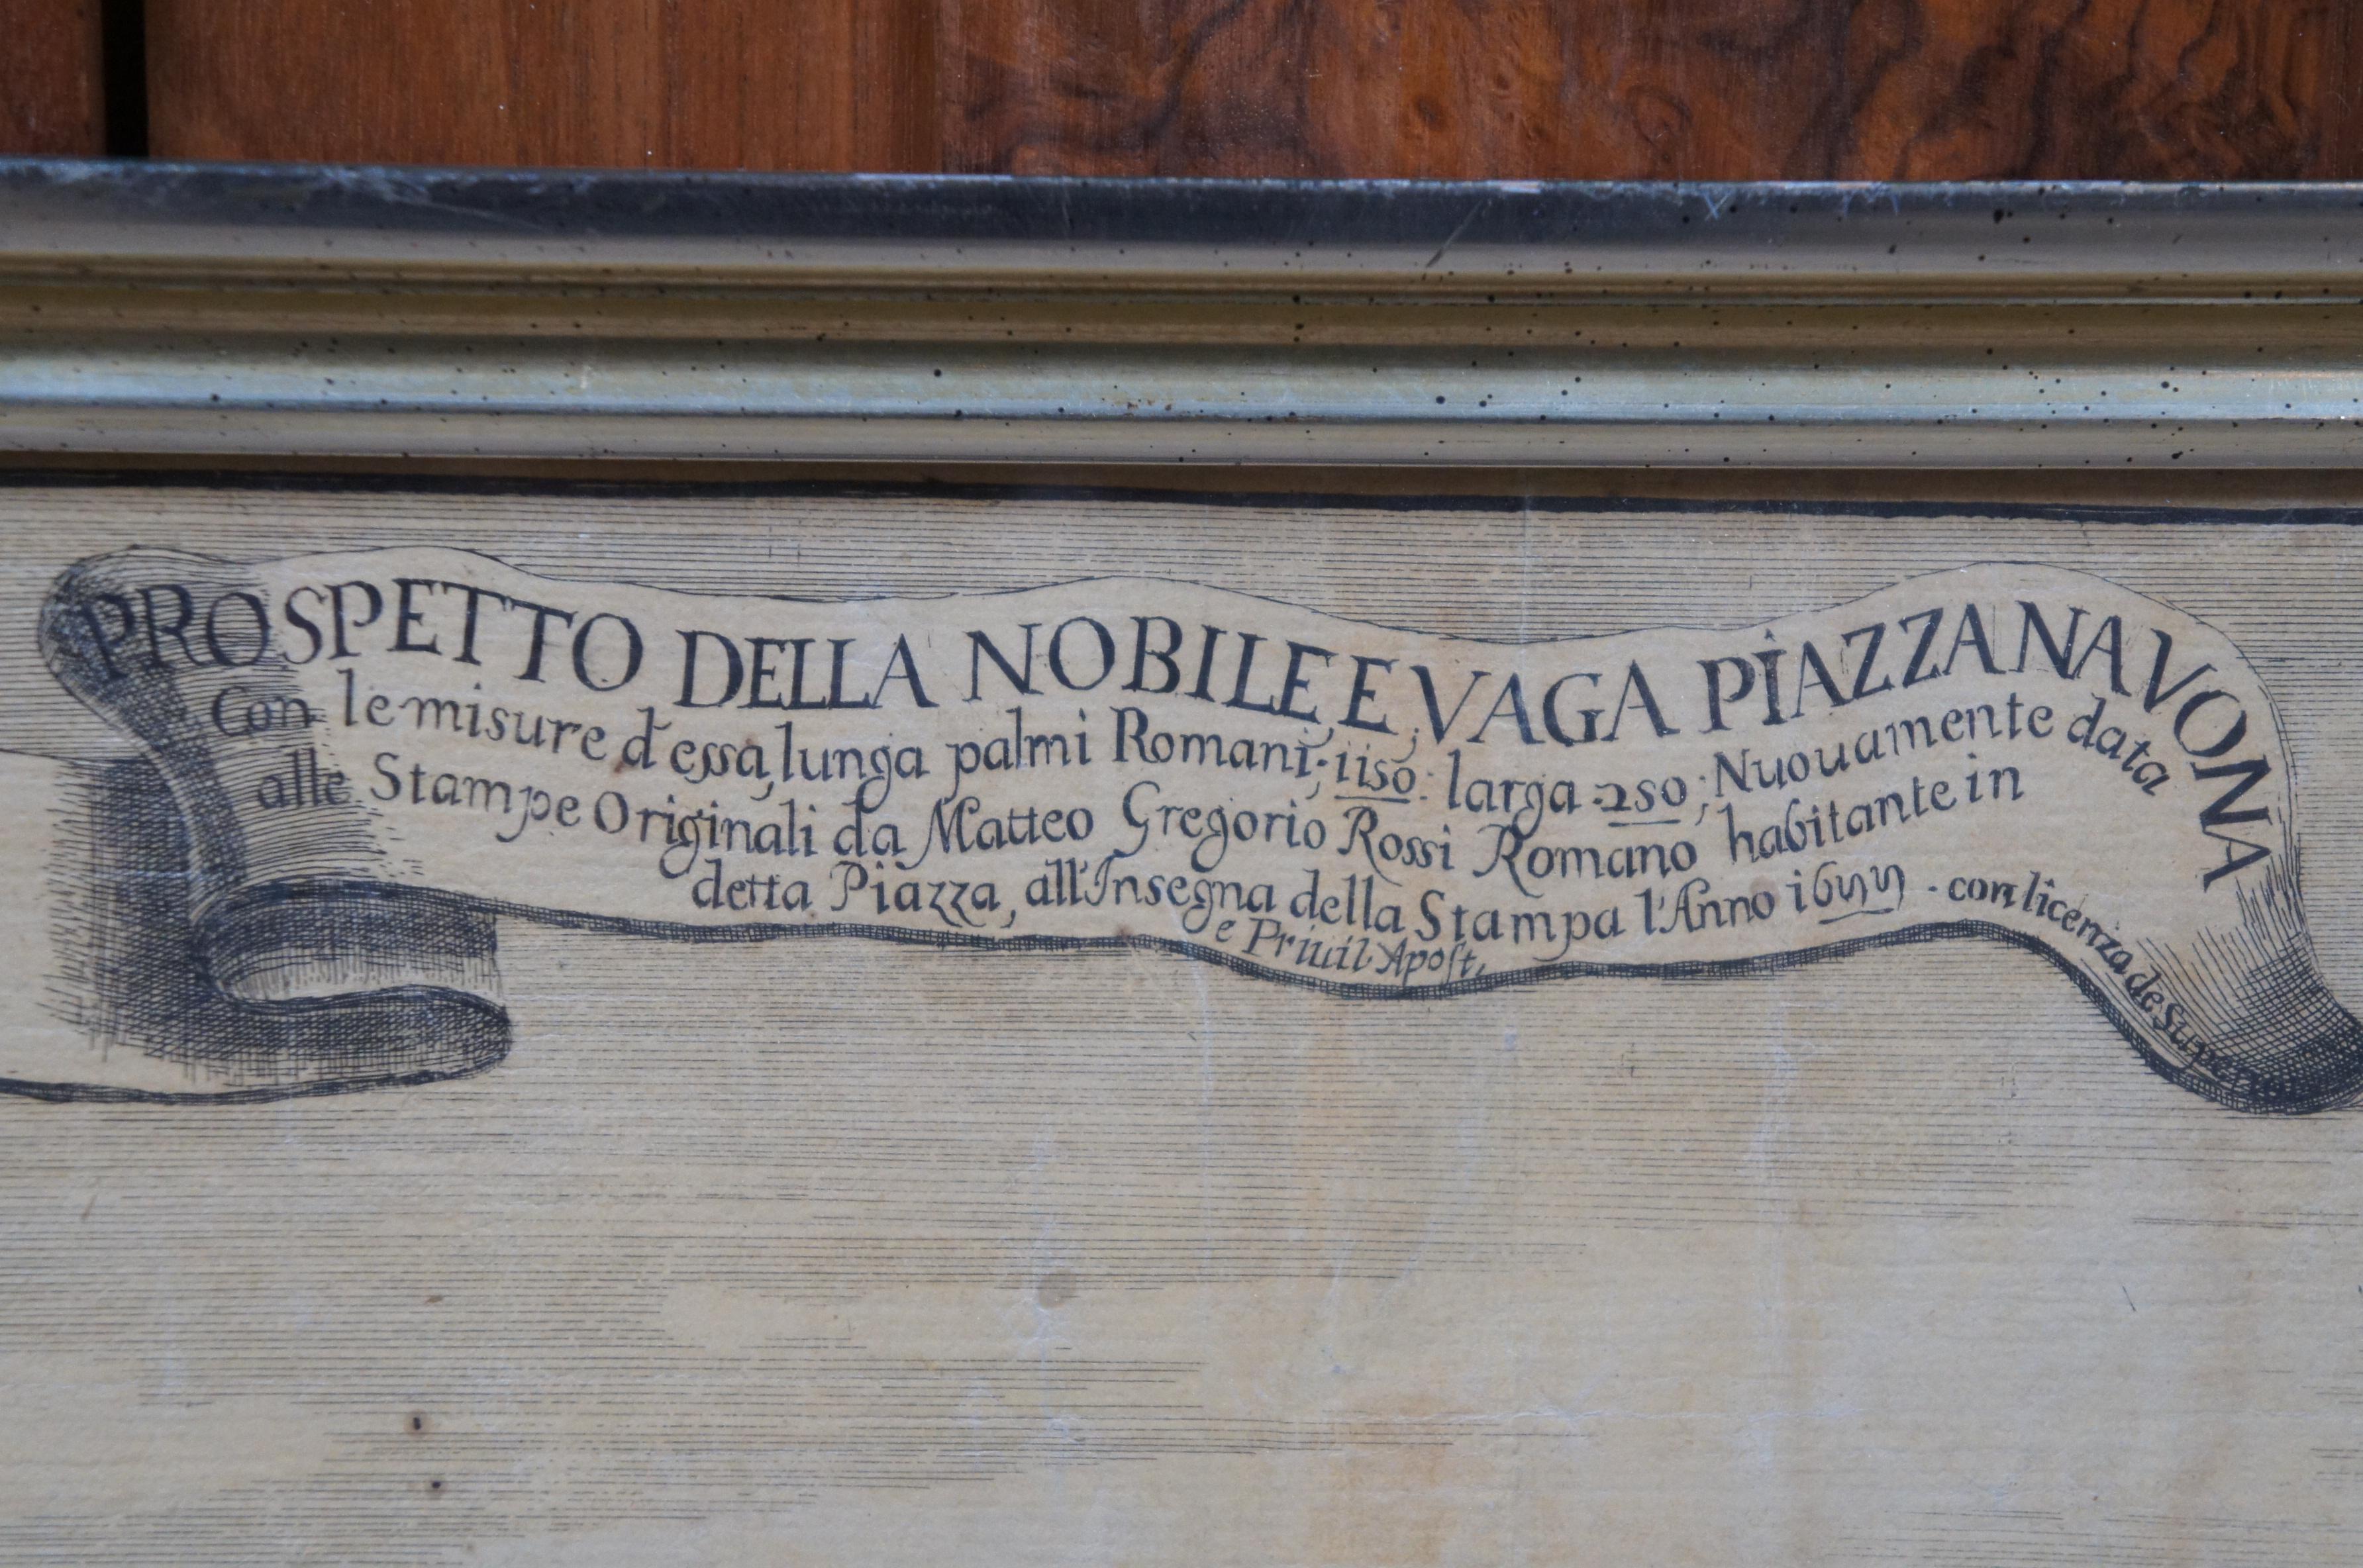 17th Century 1699 Prospetto Della Nobile E Vaga Piazza Navona Engraving Rome 1